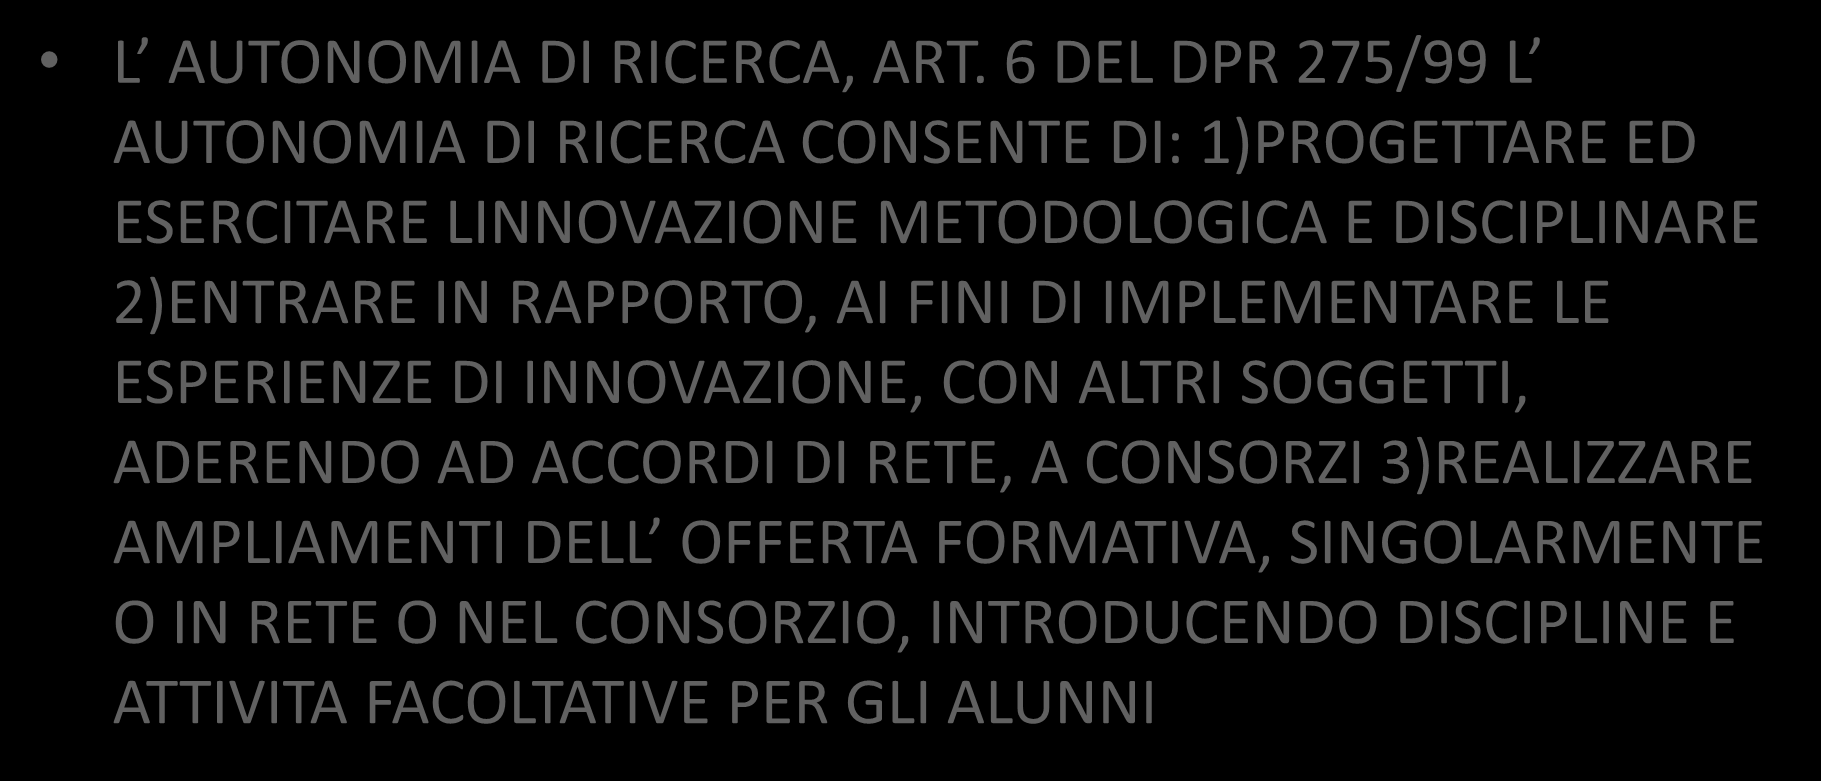 Art. 6 Autonomia di ricerca L AUTONOMIA DI RICERCA, ART.